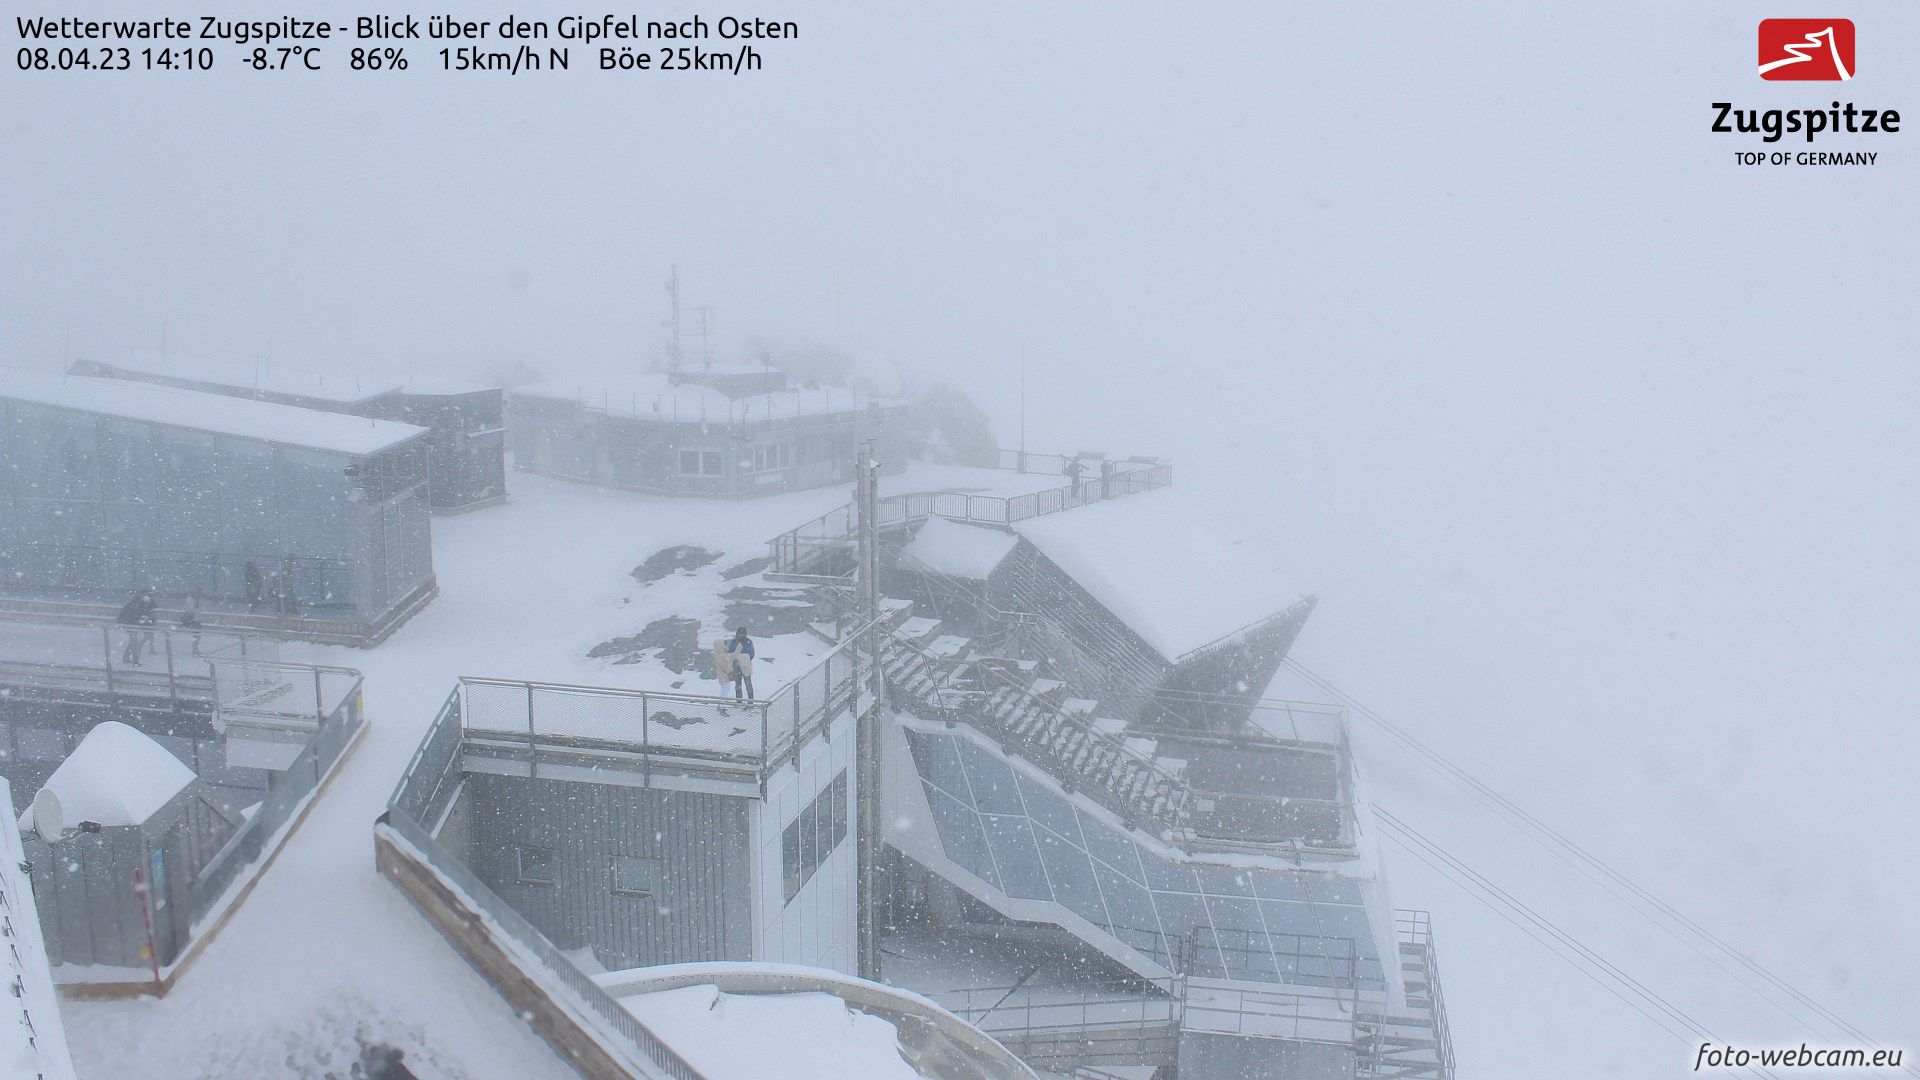 Het sneeuwt momenteel op de Zugspitze (foto-webcam.eu)